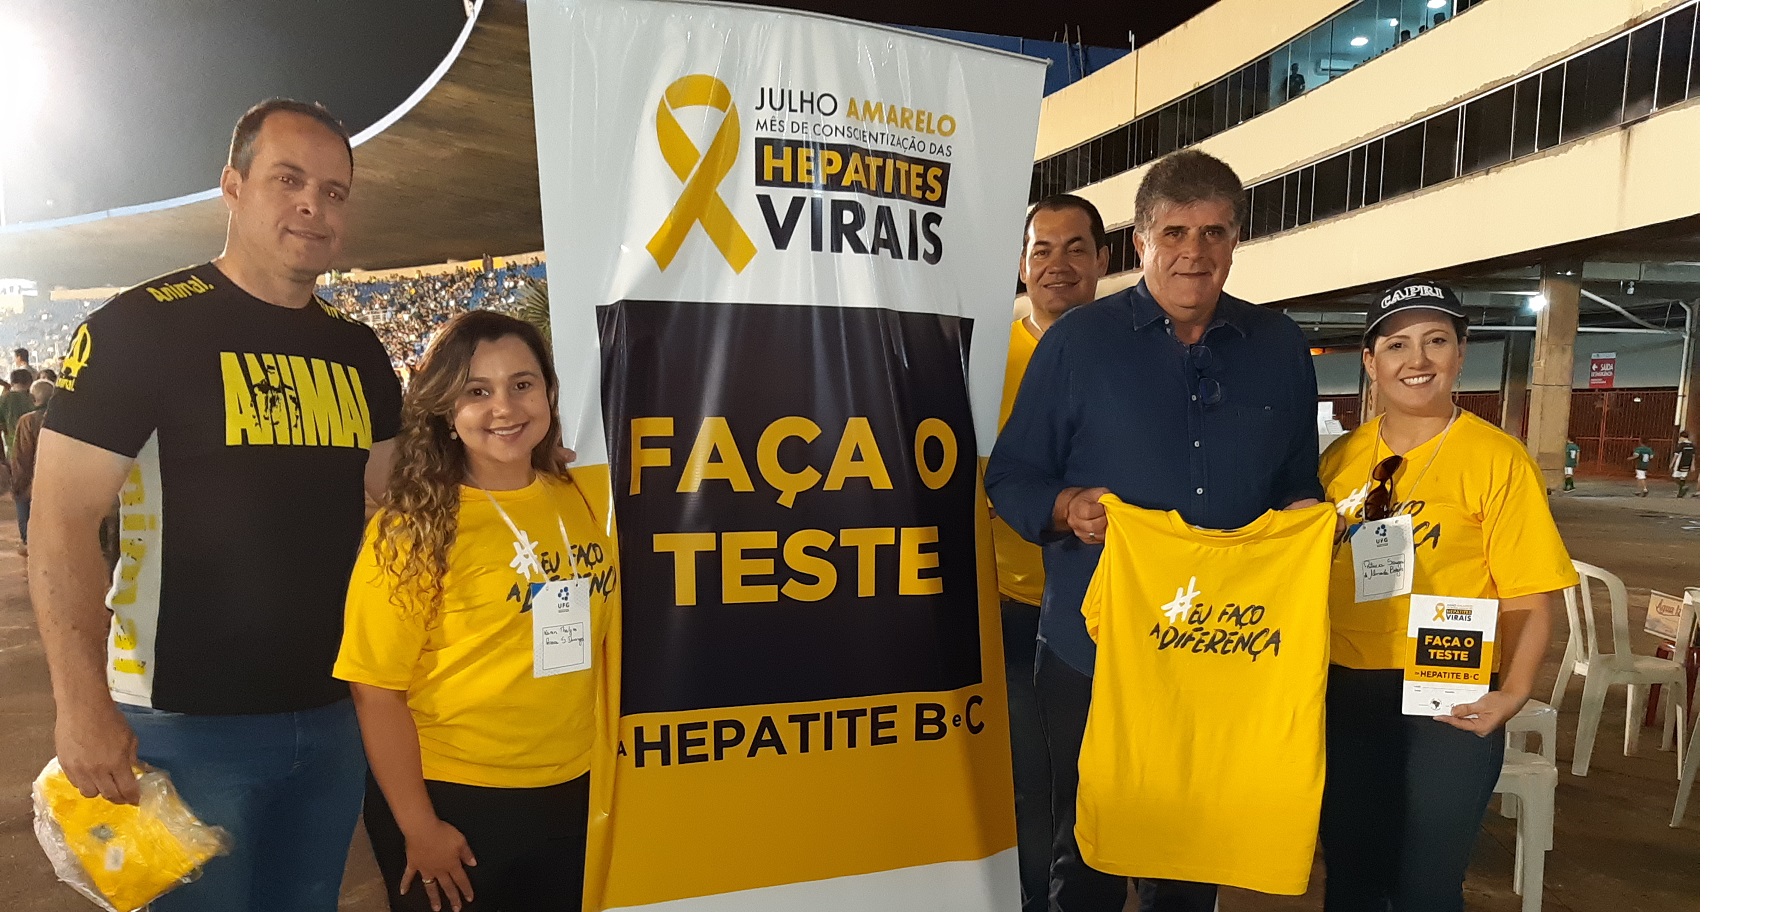 Julho Amarelo realiza 433 testes de hepatite no Serra Dourada